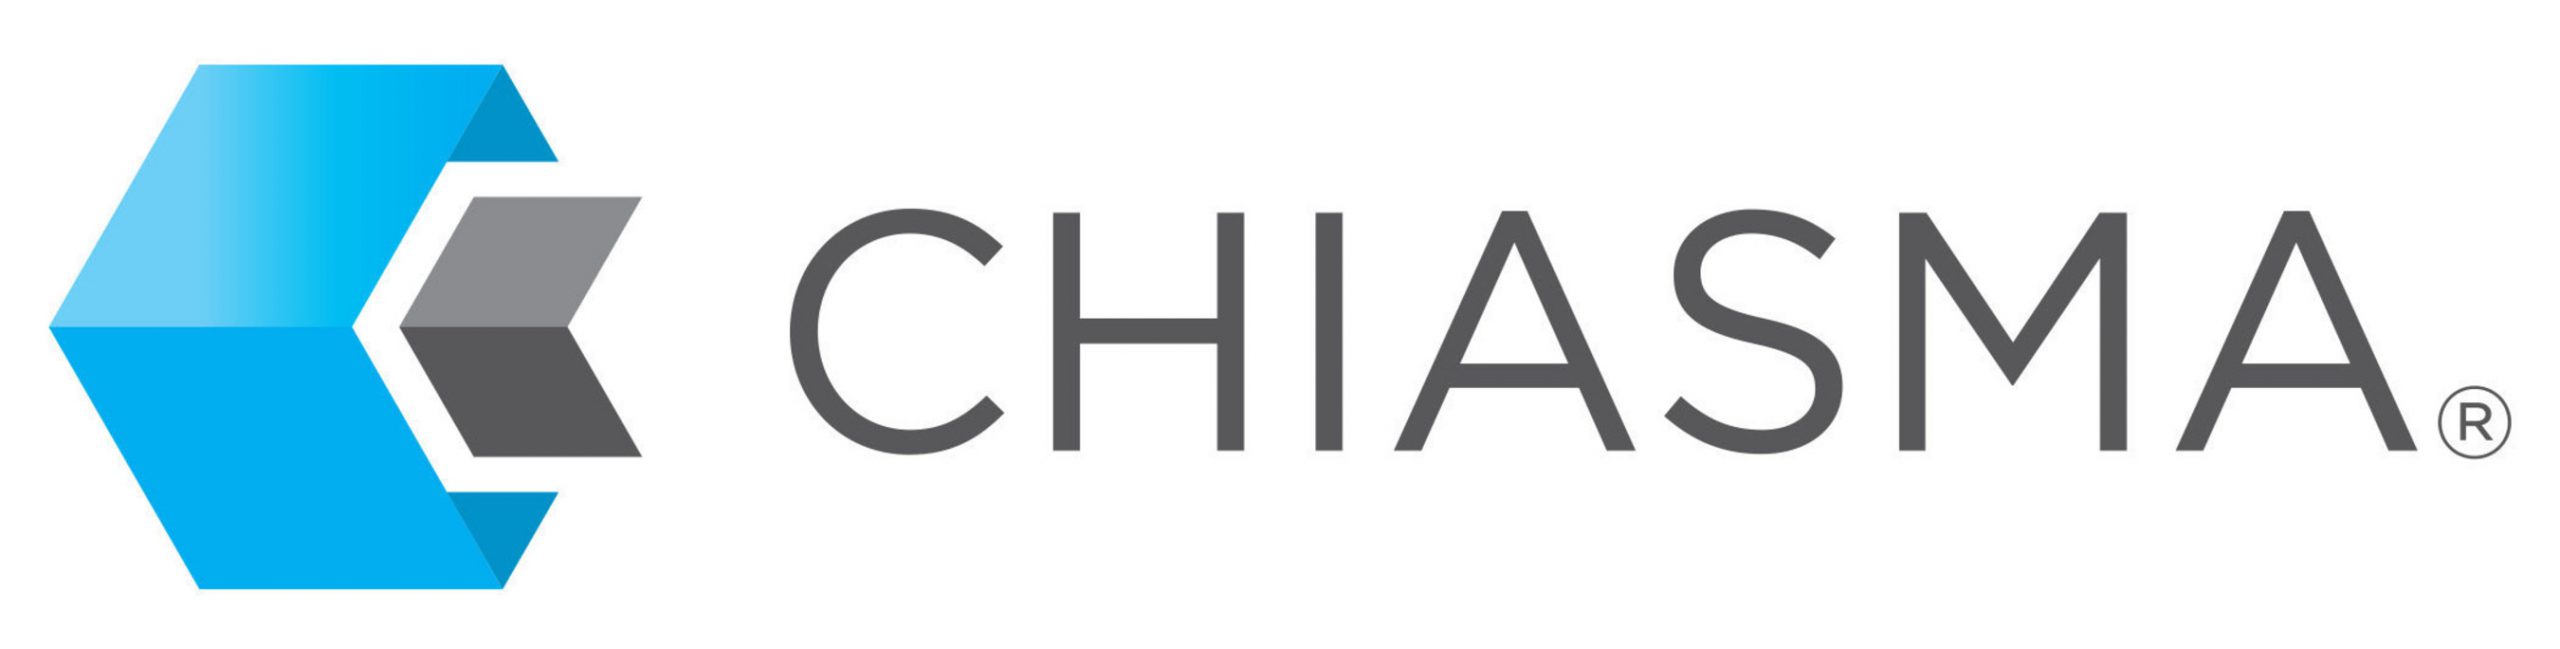 Chiasma Logo (PRNewsFoto/Chiasma)